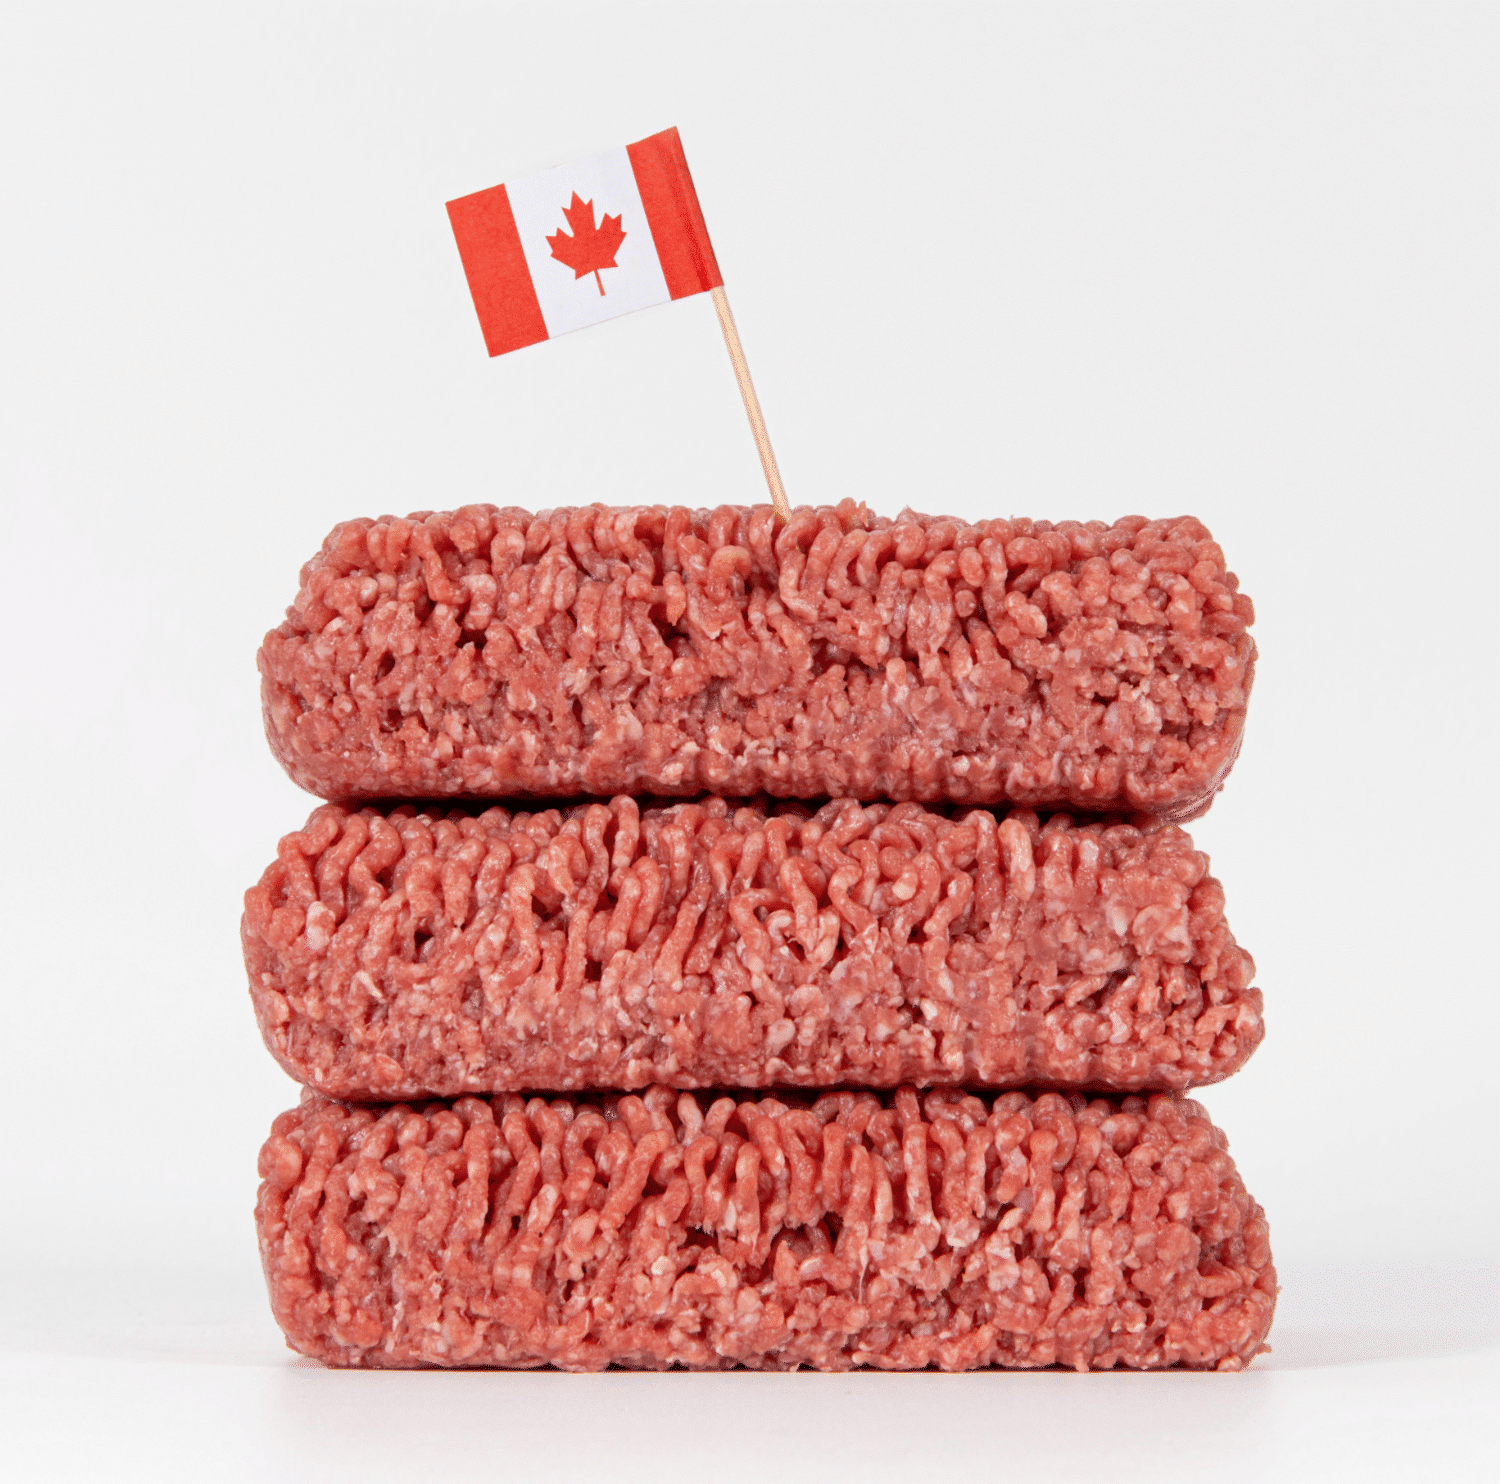 加拿大的肉类工业有多大? (2022年版)